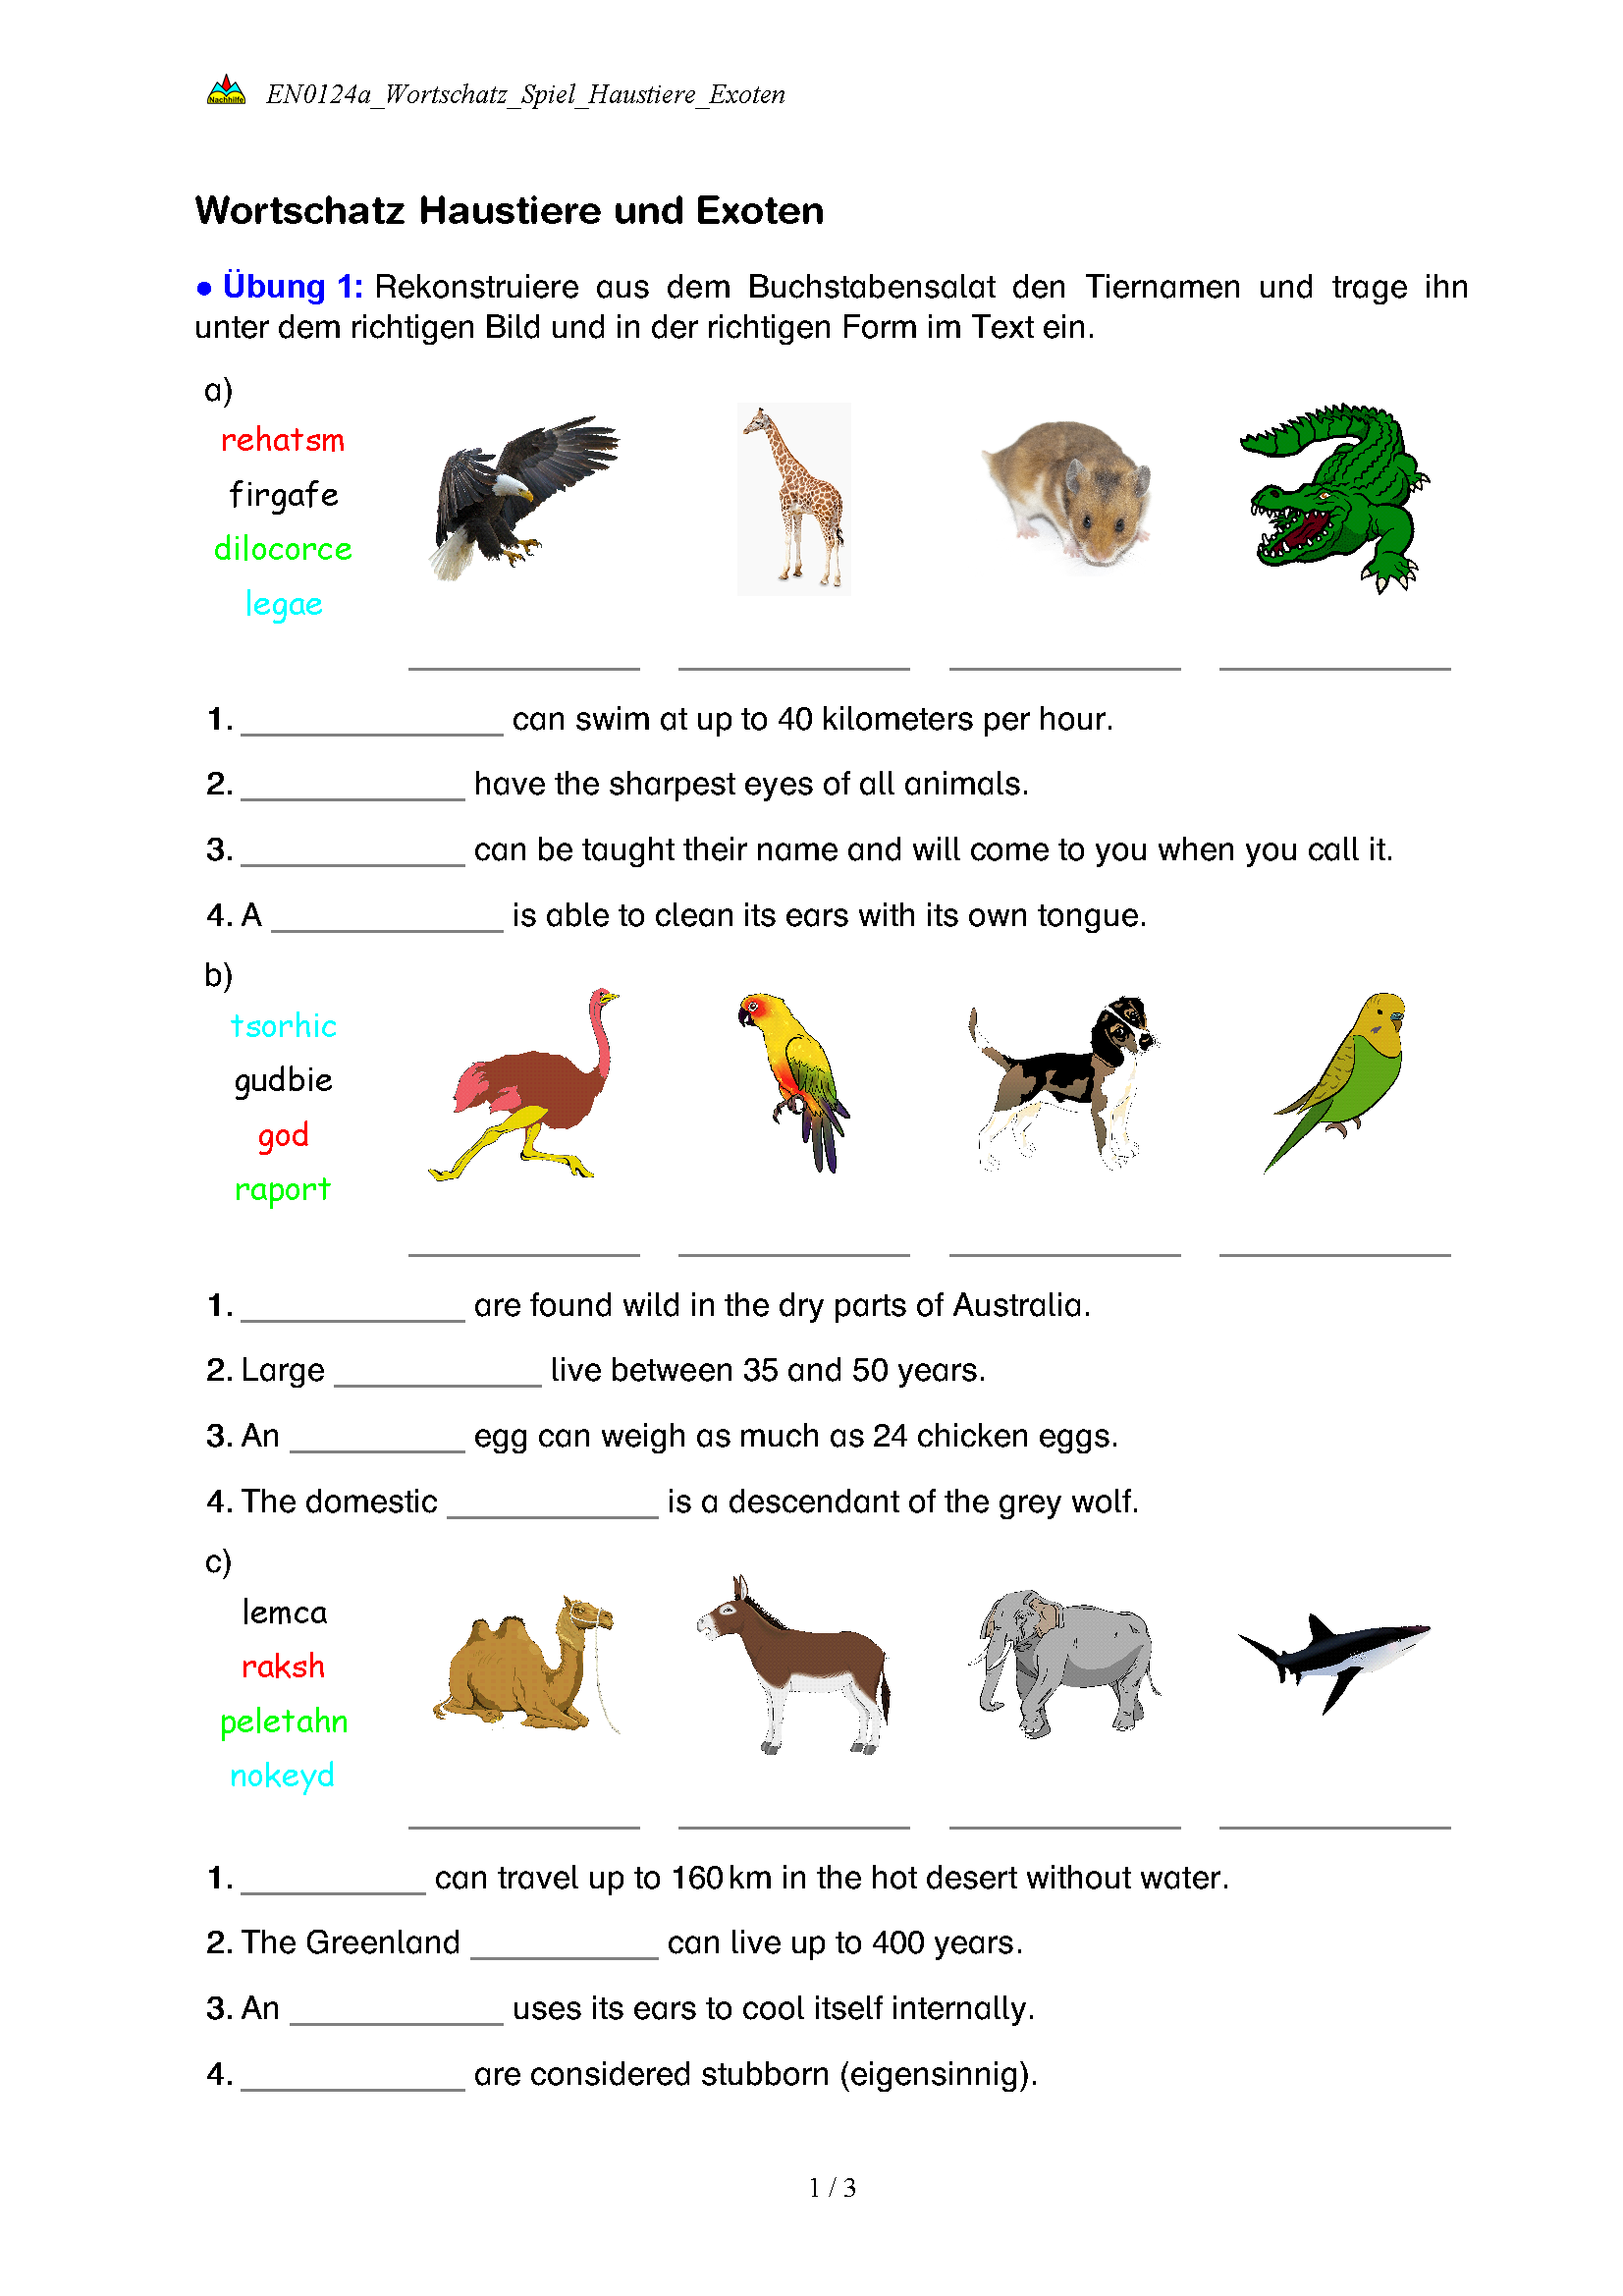 Wortschatz Haustiere und Exoten